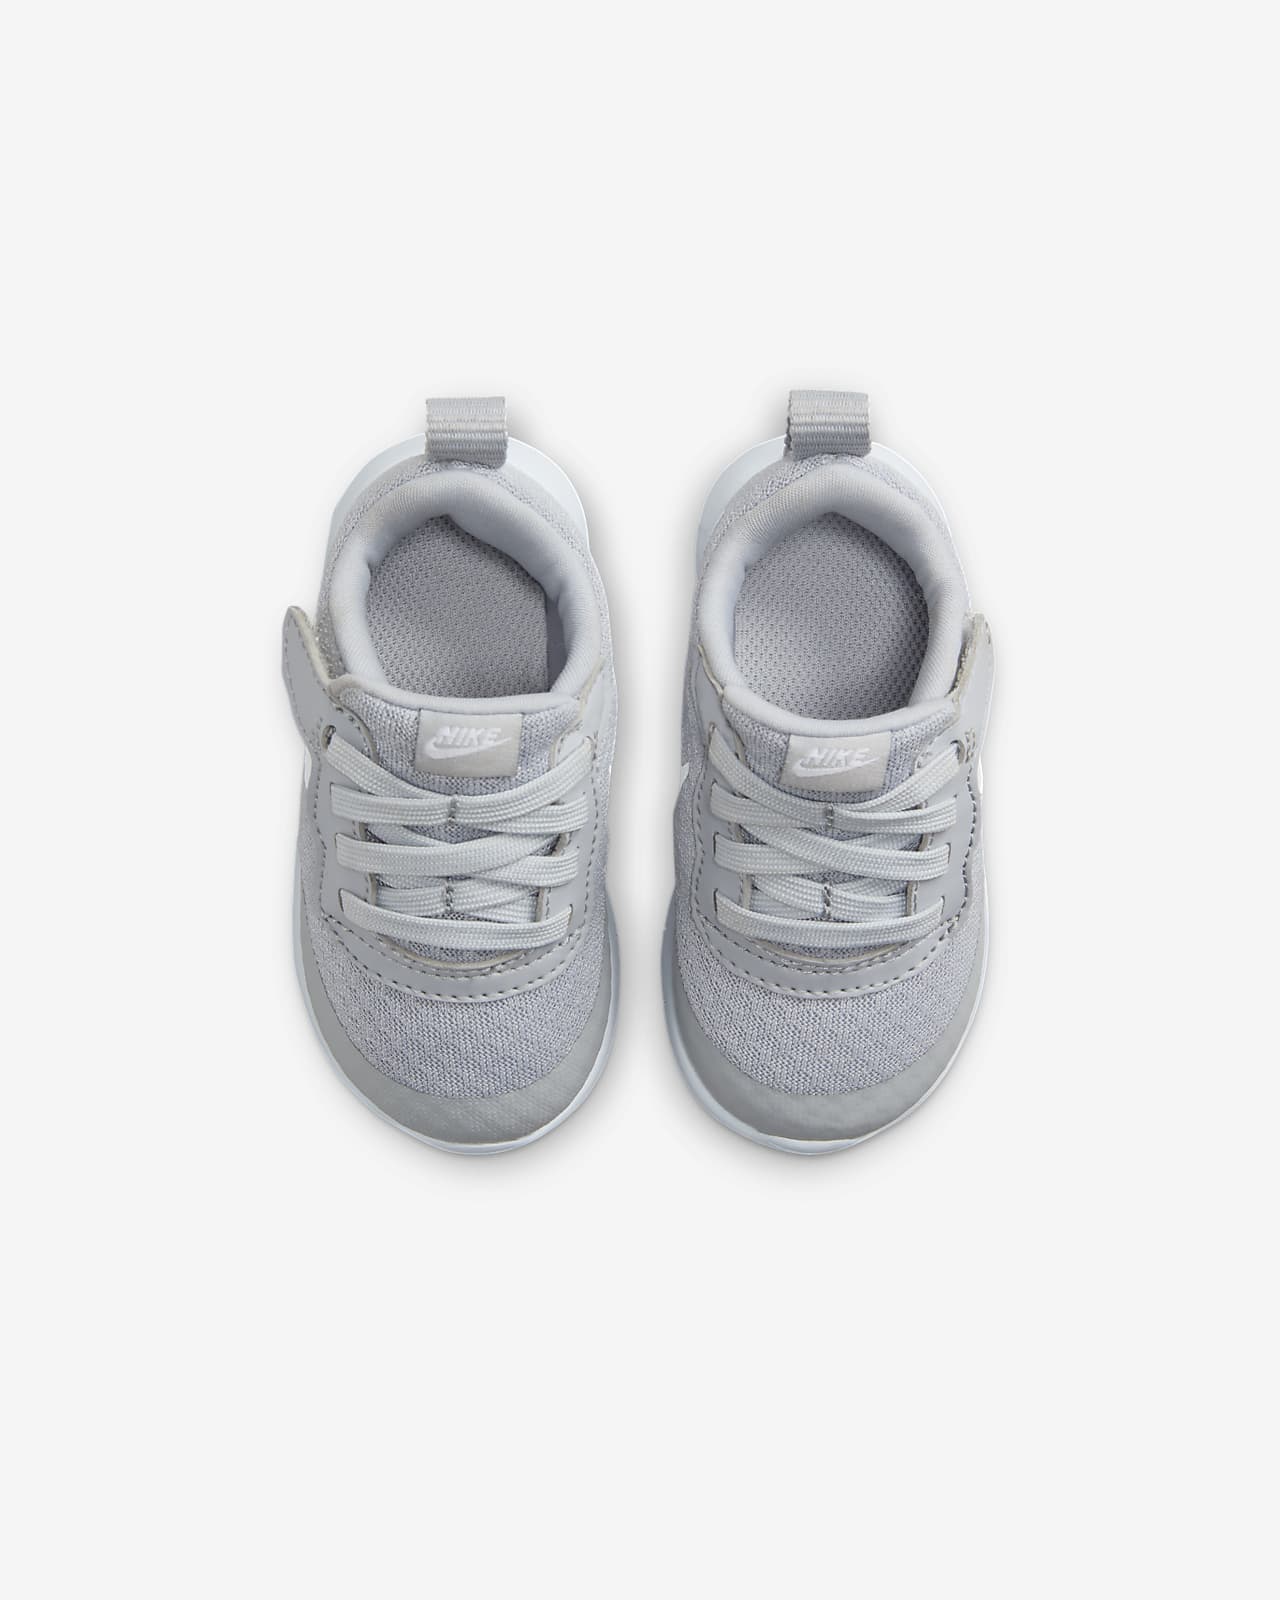 Tanjun Nike Shoes. EasyOn Baby/Toddler